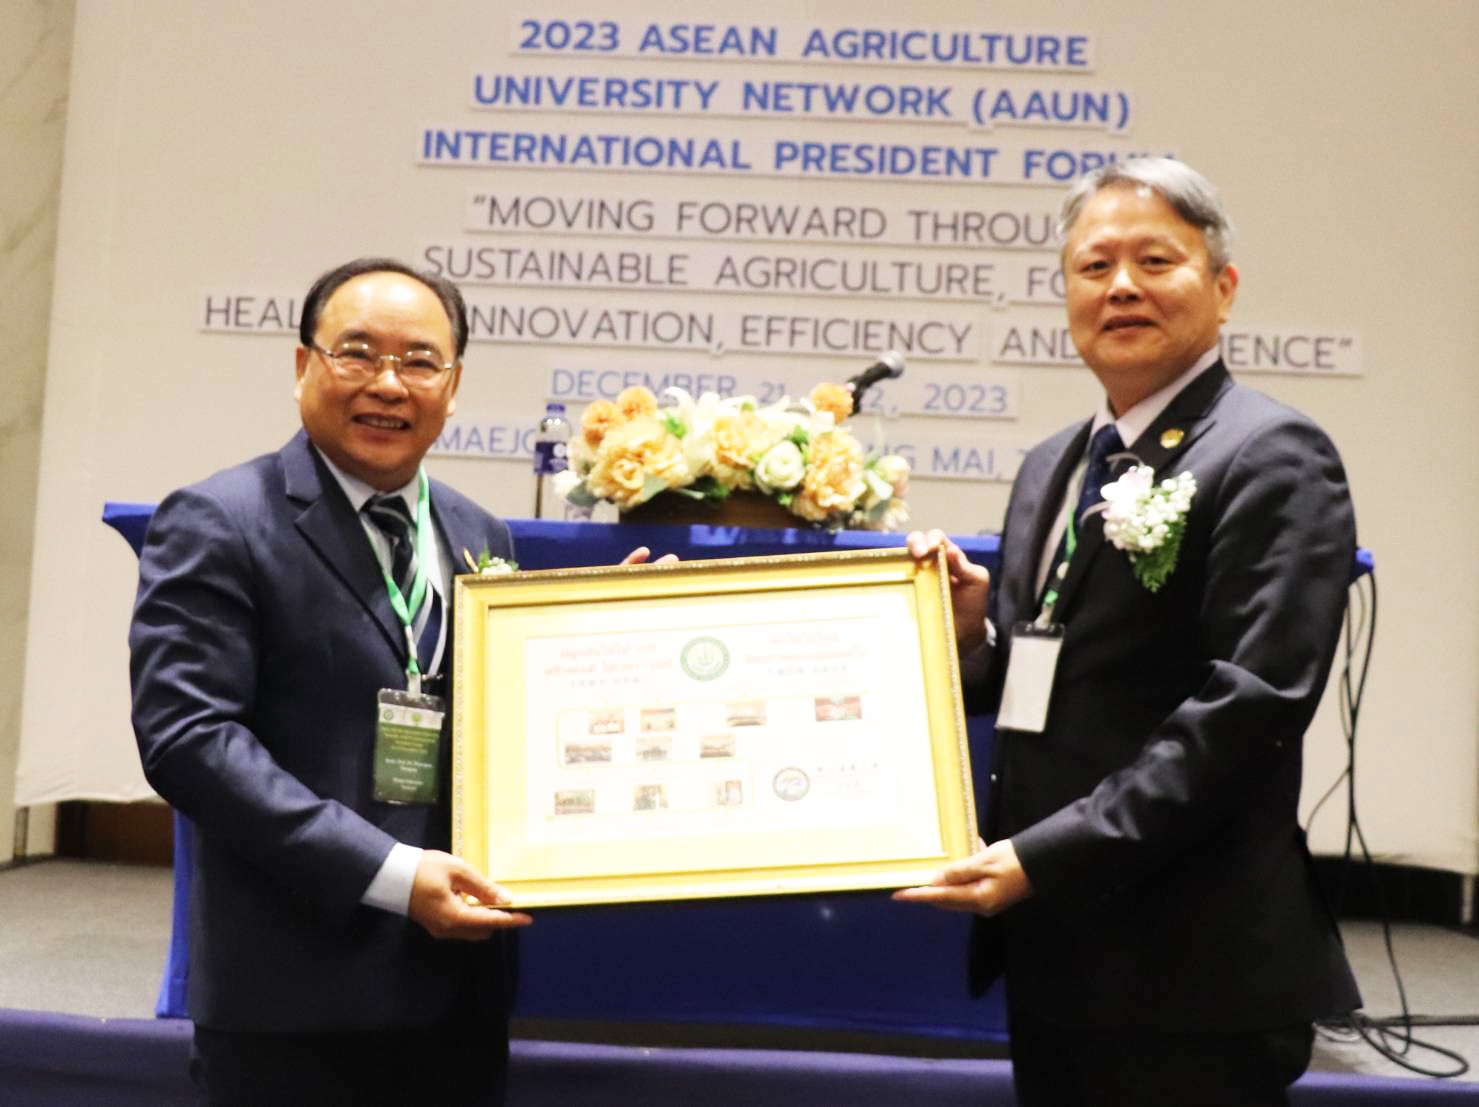 1121220東協農業大學網絡聯盟(ASEAN Agriculture University Network, AAUN)國際校長論壇